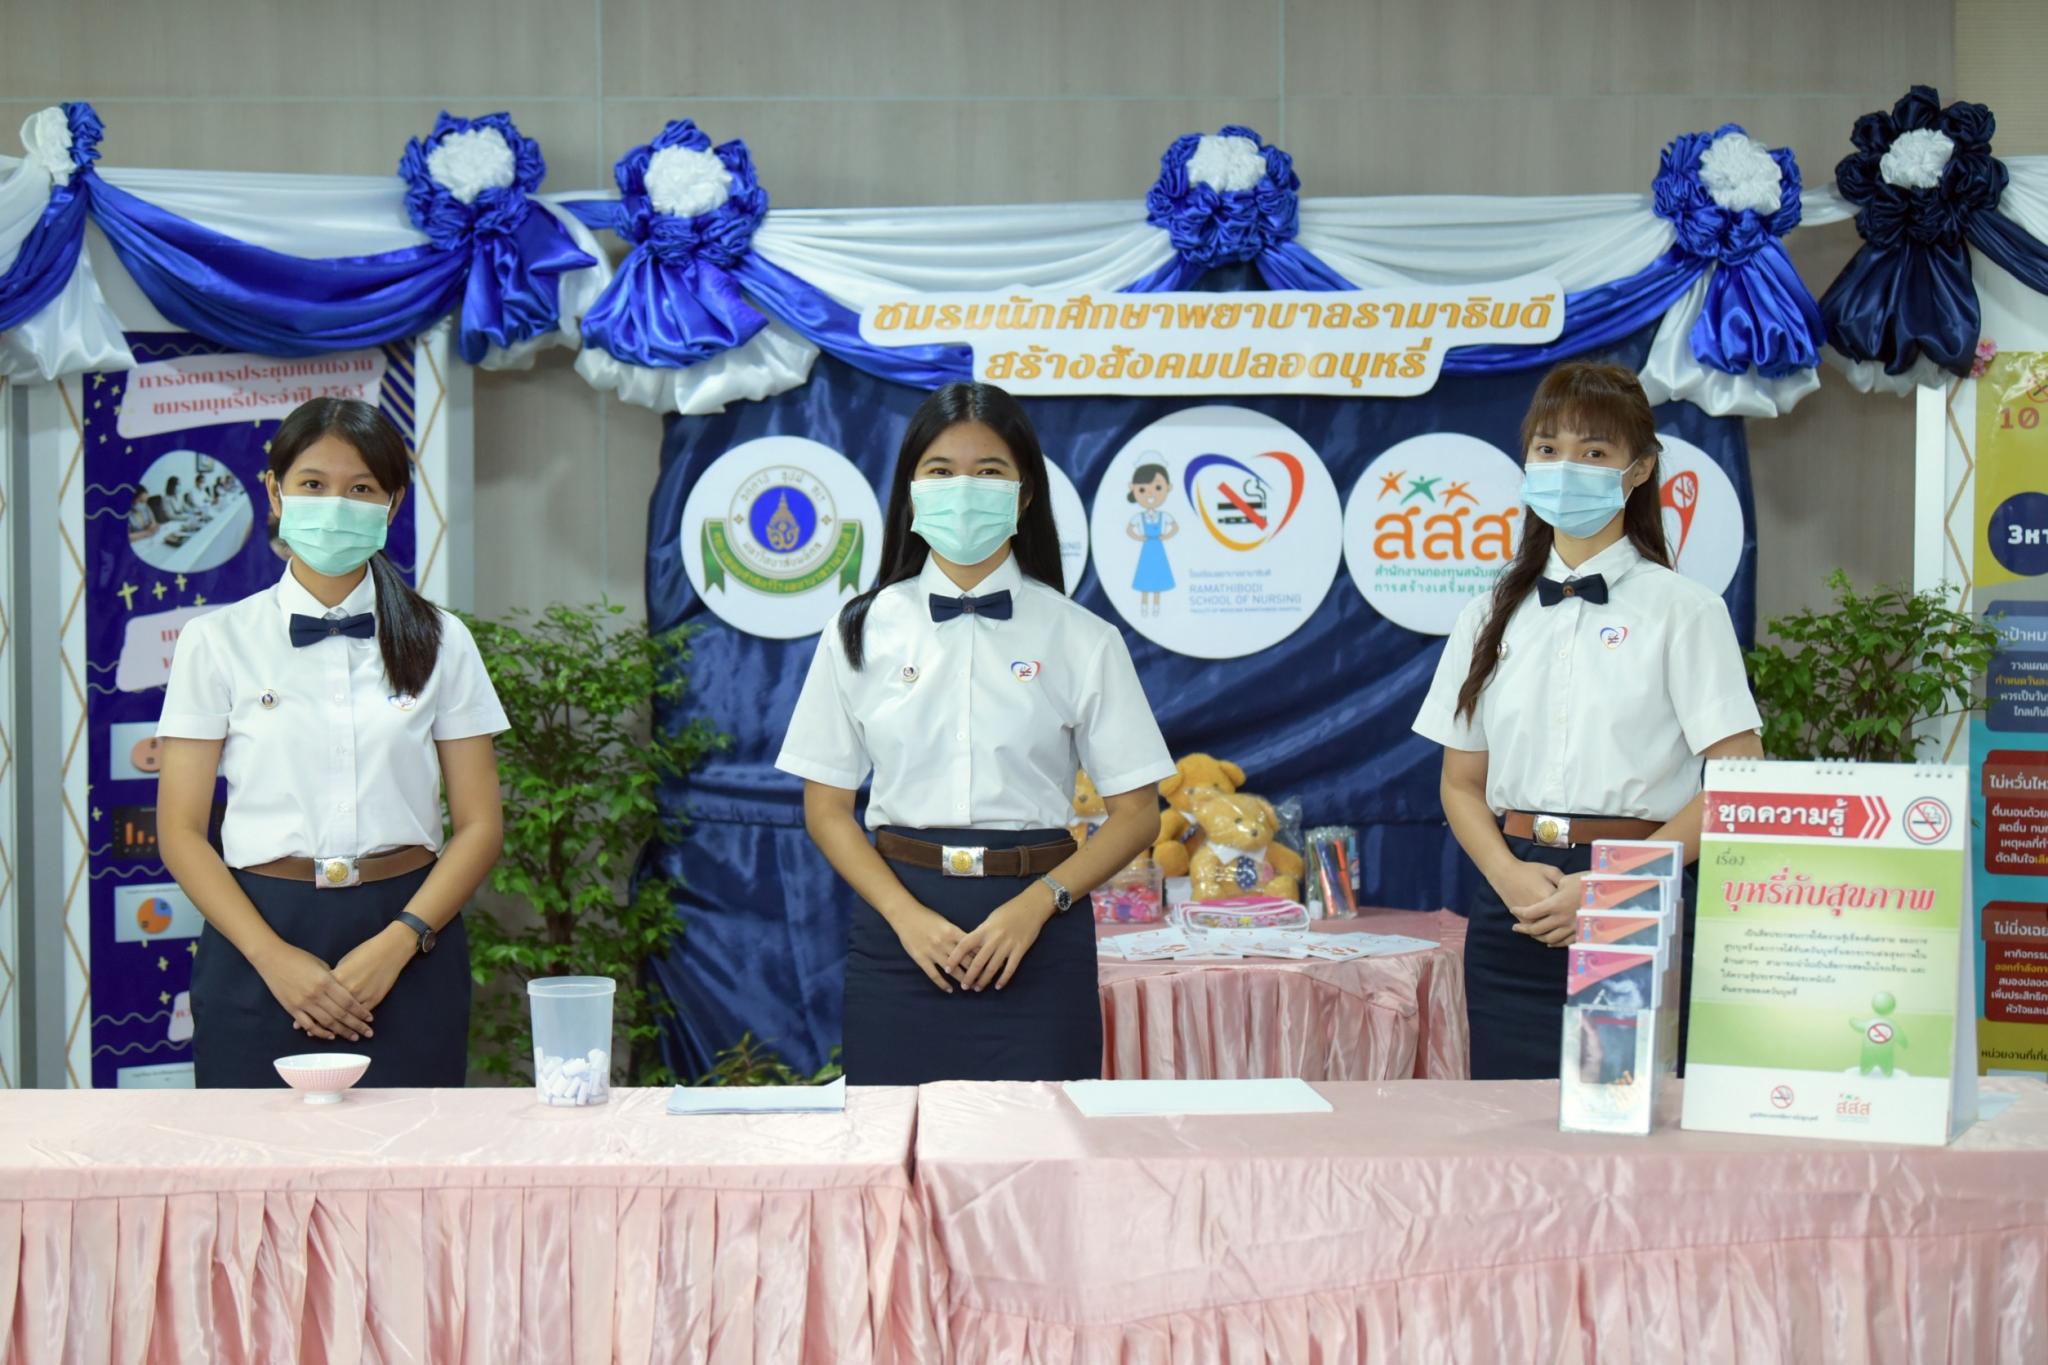 แถลงข่าว โรงเรียนพยาบาลรามาธิบดี คณะแพทยศาสตร์โรงพยาบาลรามาธิบดี มหาวิทยาลัยมหิดล สถาบันอุดมศึกษาต้นแบบเพื่อสังคมไทยปลอดบุหรี่